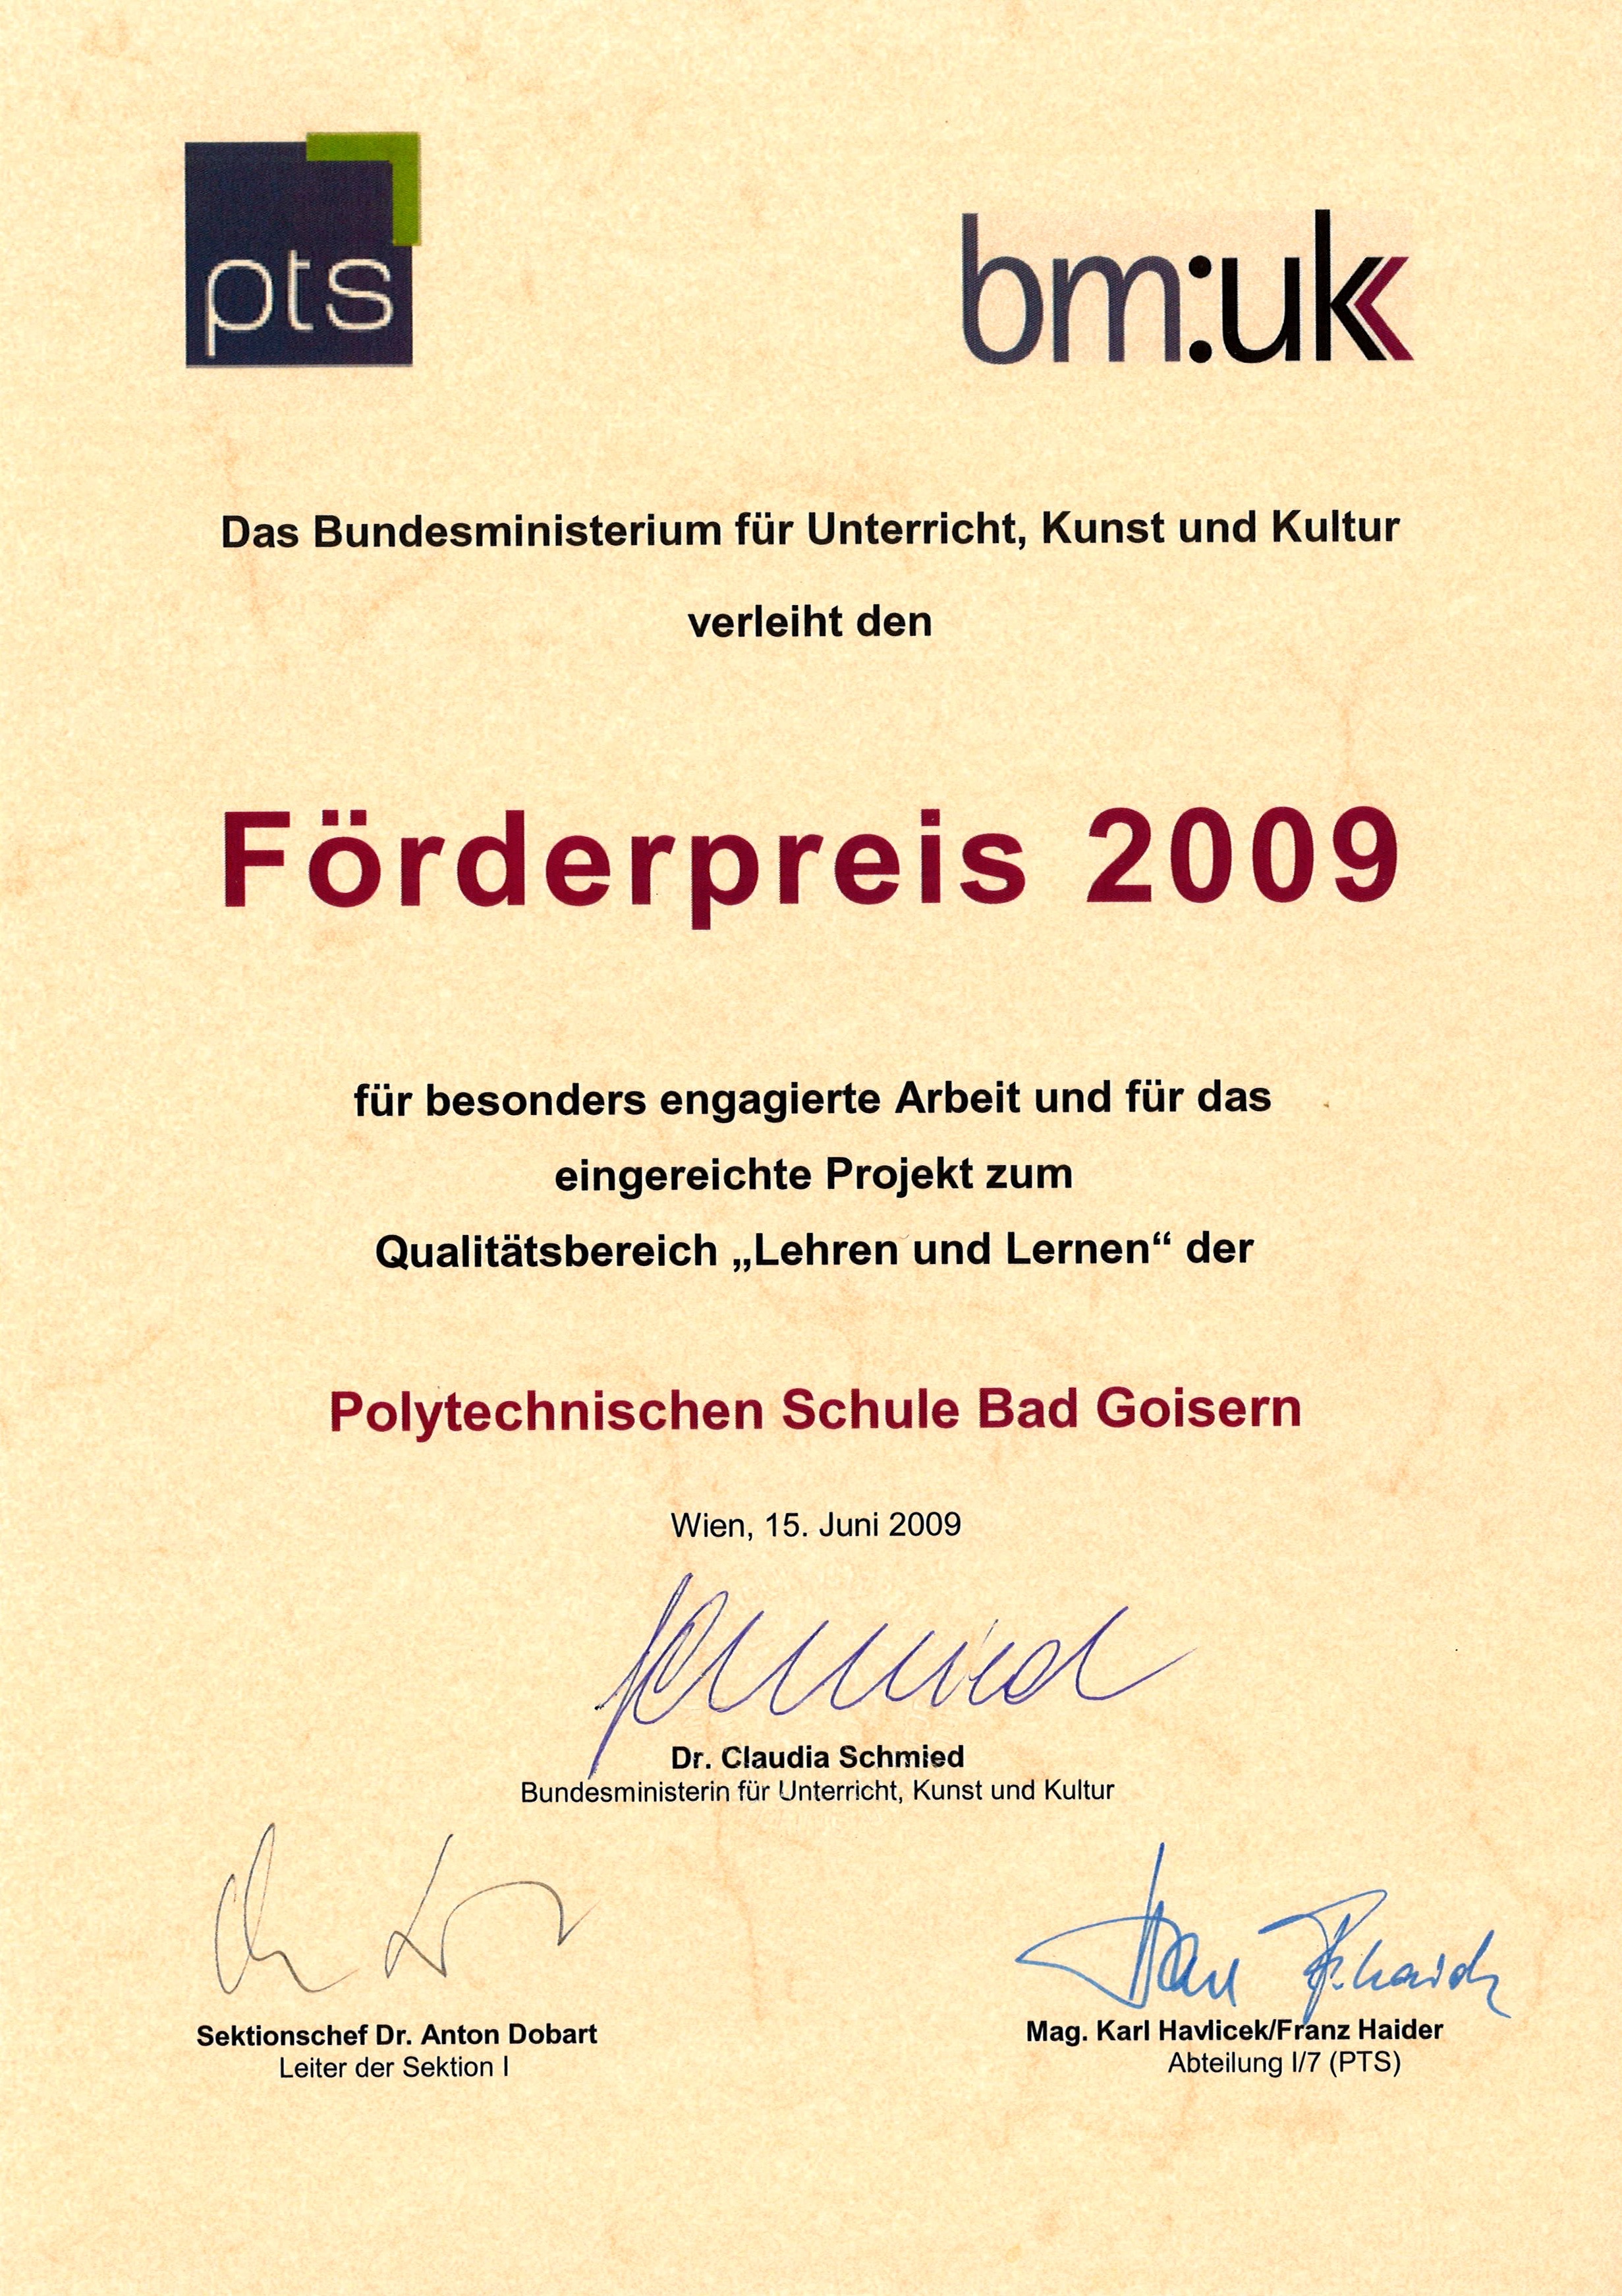 Frderpreis 2009